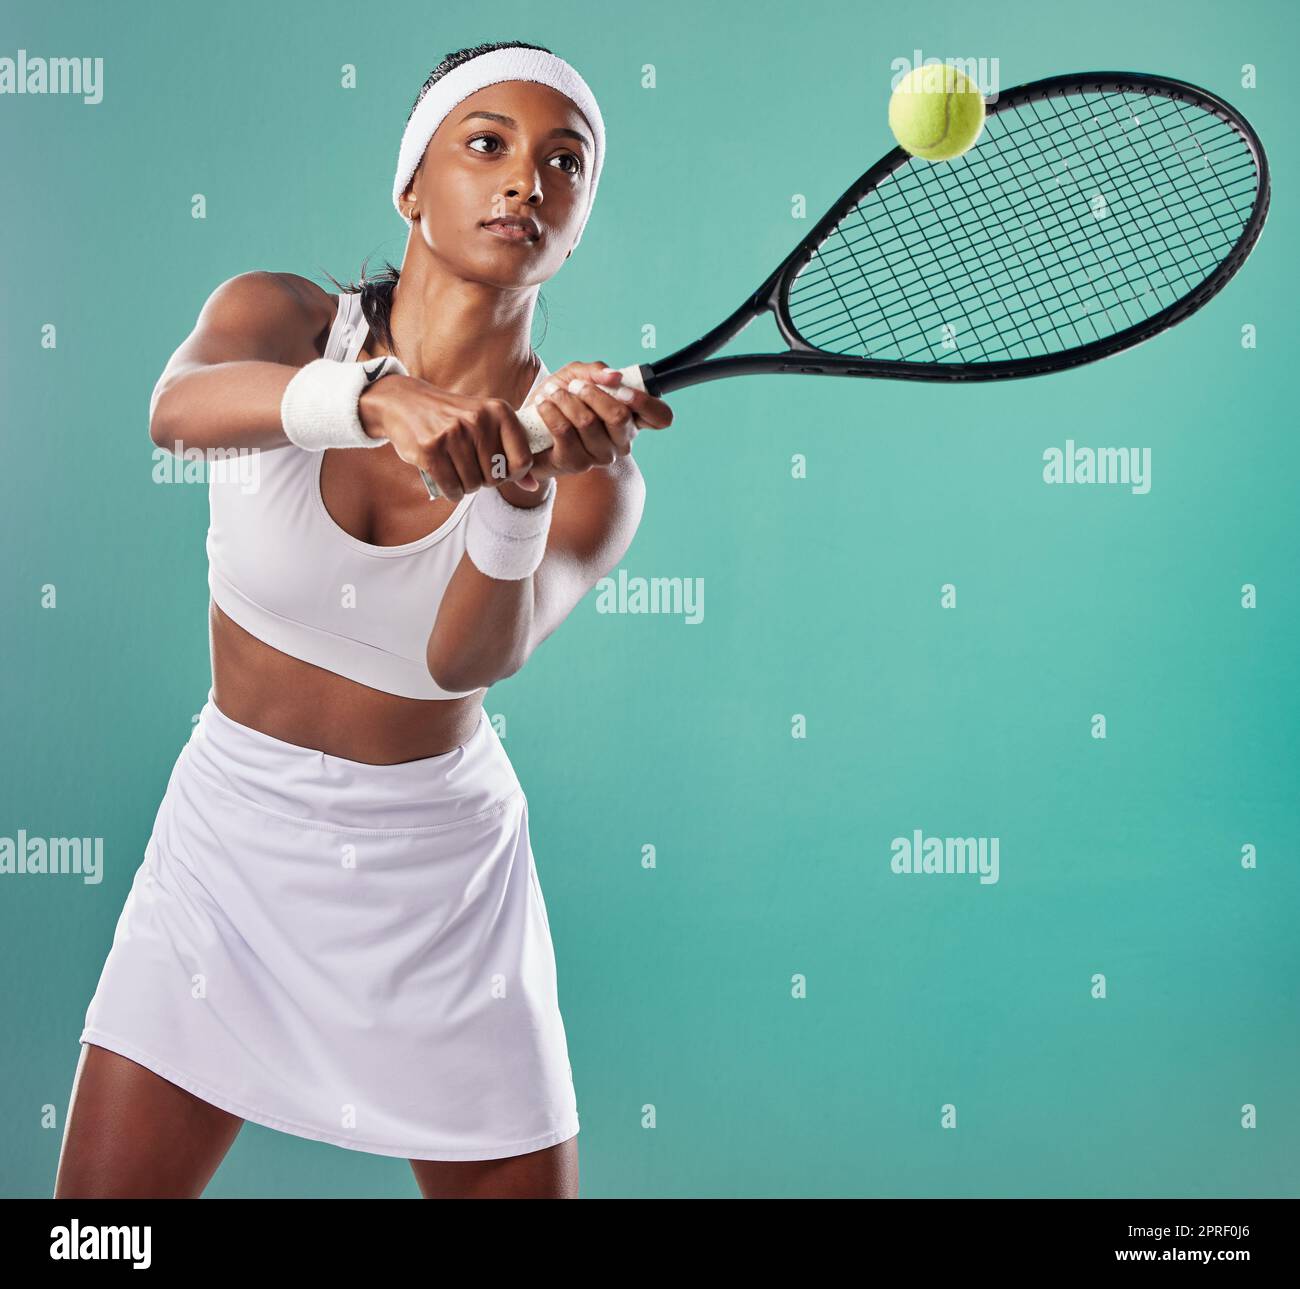 Ropa deportiva de tenis fotografías imágenes de alta resolución - Alamy